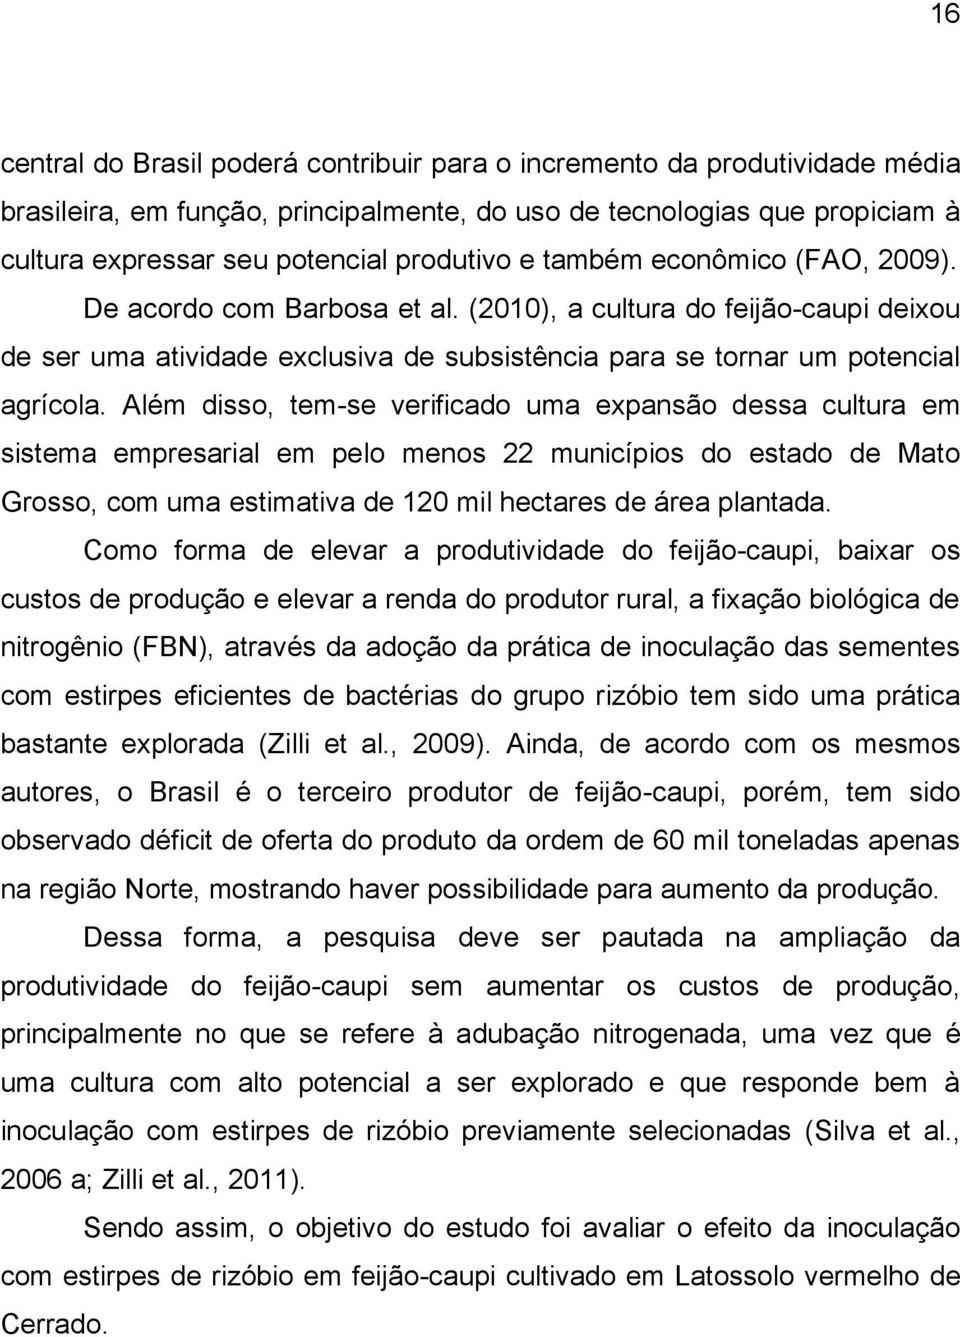 Além disso, tem-se verificado uma expansão dessa cultura em sistema empresarial em pelo menos 22 municípios do estado de Mato Grosso, com uma estimativa de 120 mil hectares de área plantada.